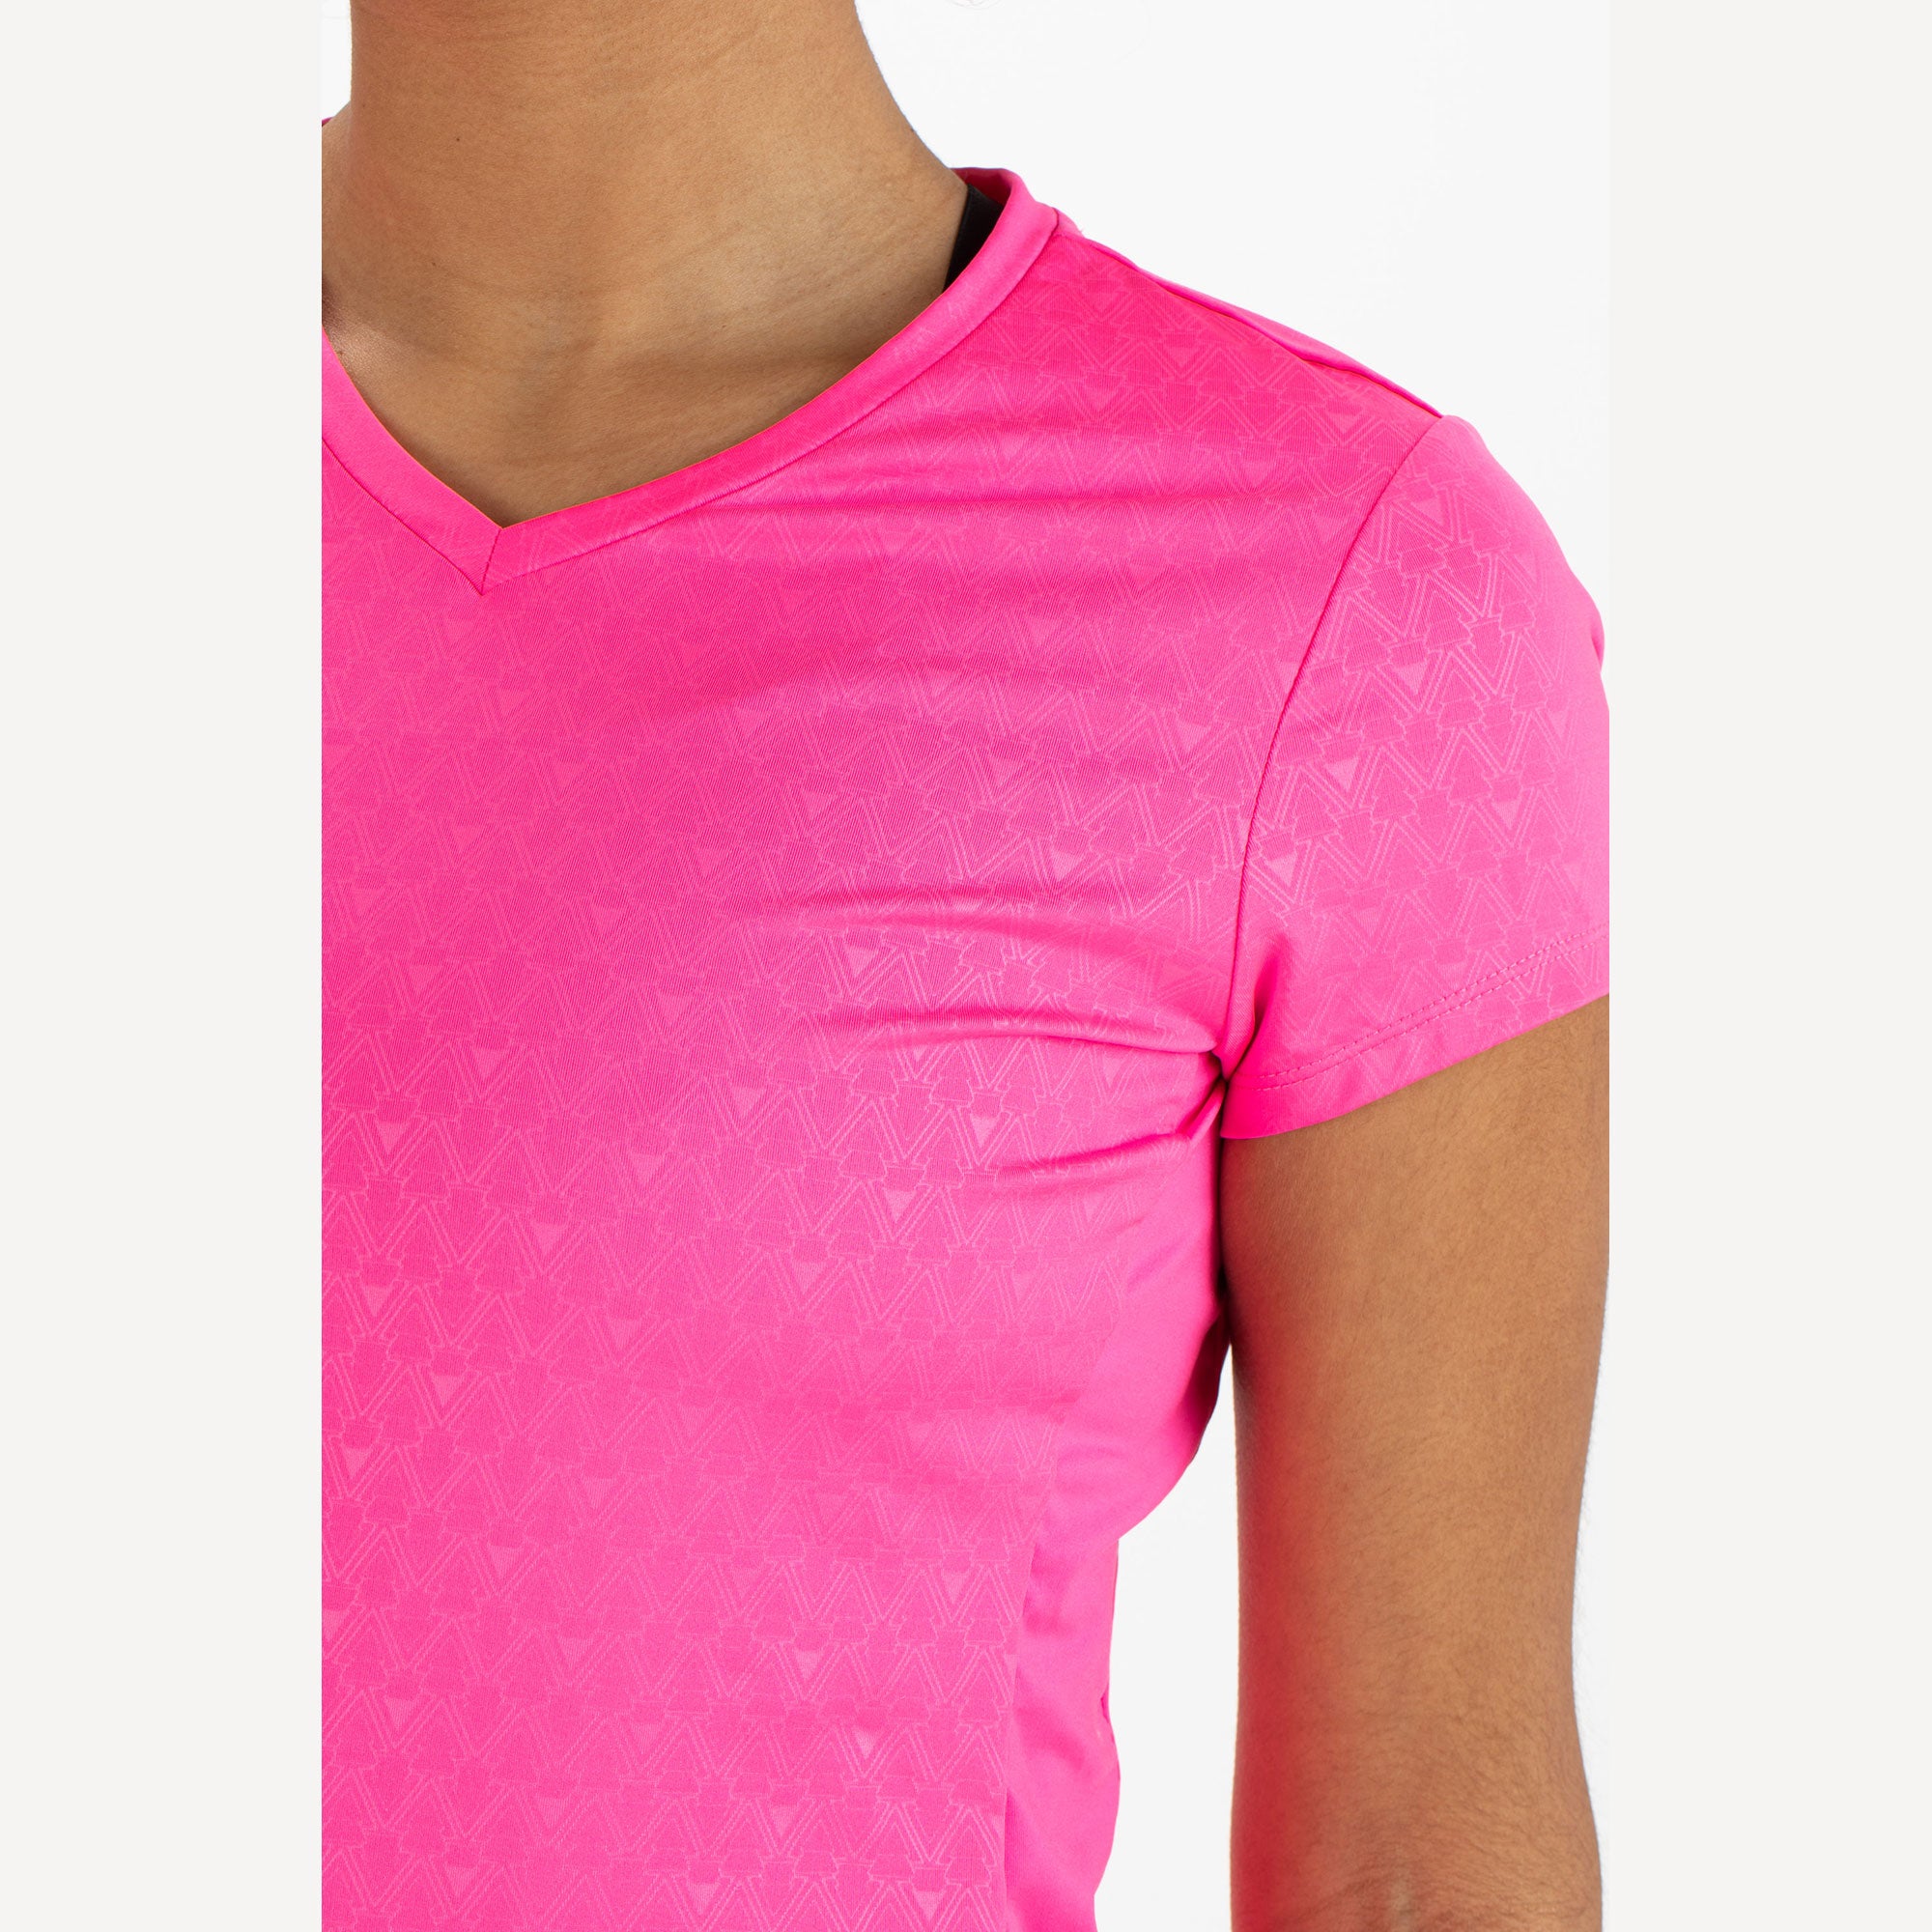 Sjeng Sports Dianne Women's Tennis Shirt Pink (3)